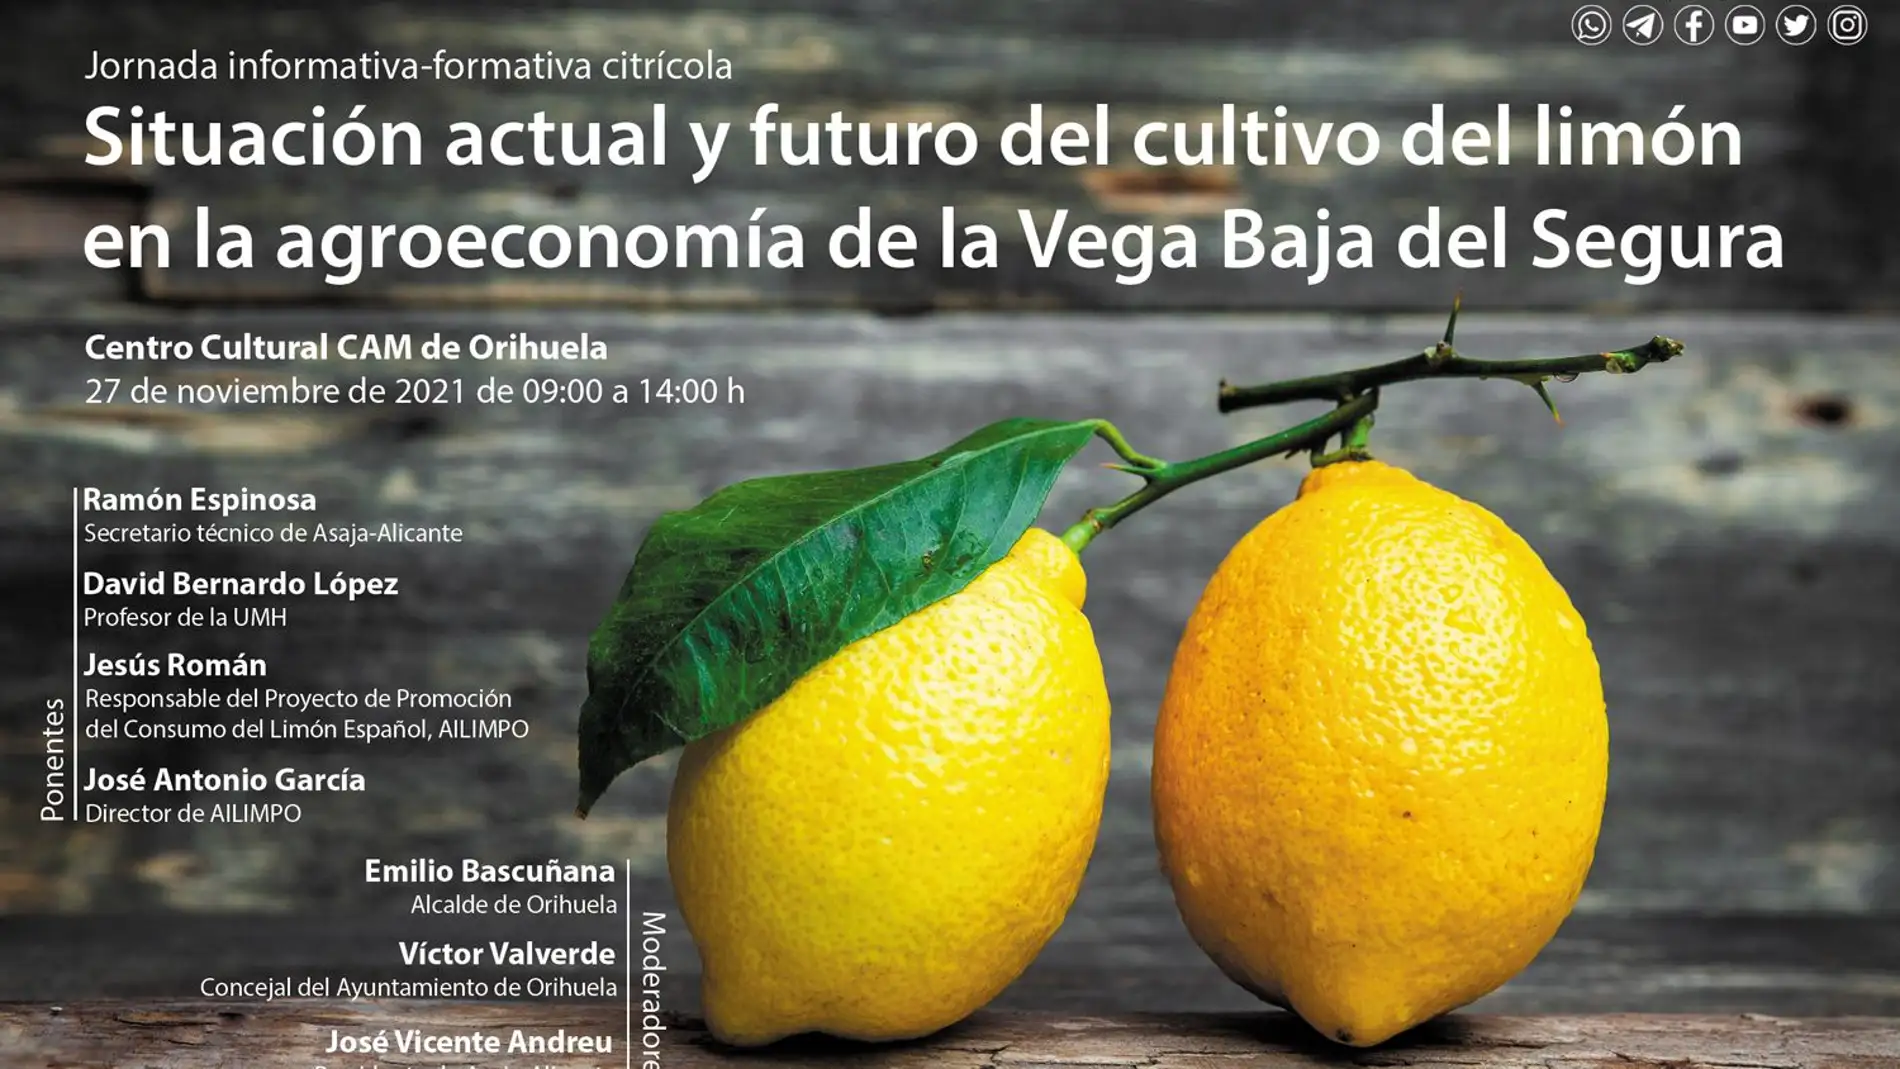 El Instituto Juan Gil Albert organizada una jornada informativa sobre la agroeconomía en la Vega Baja 